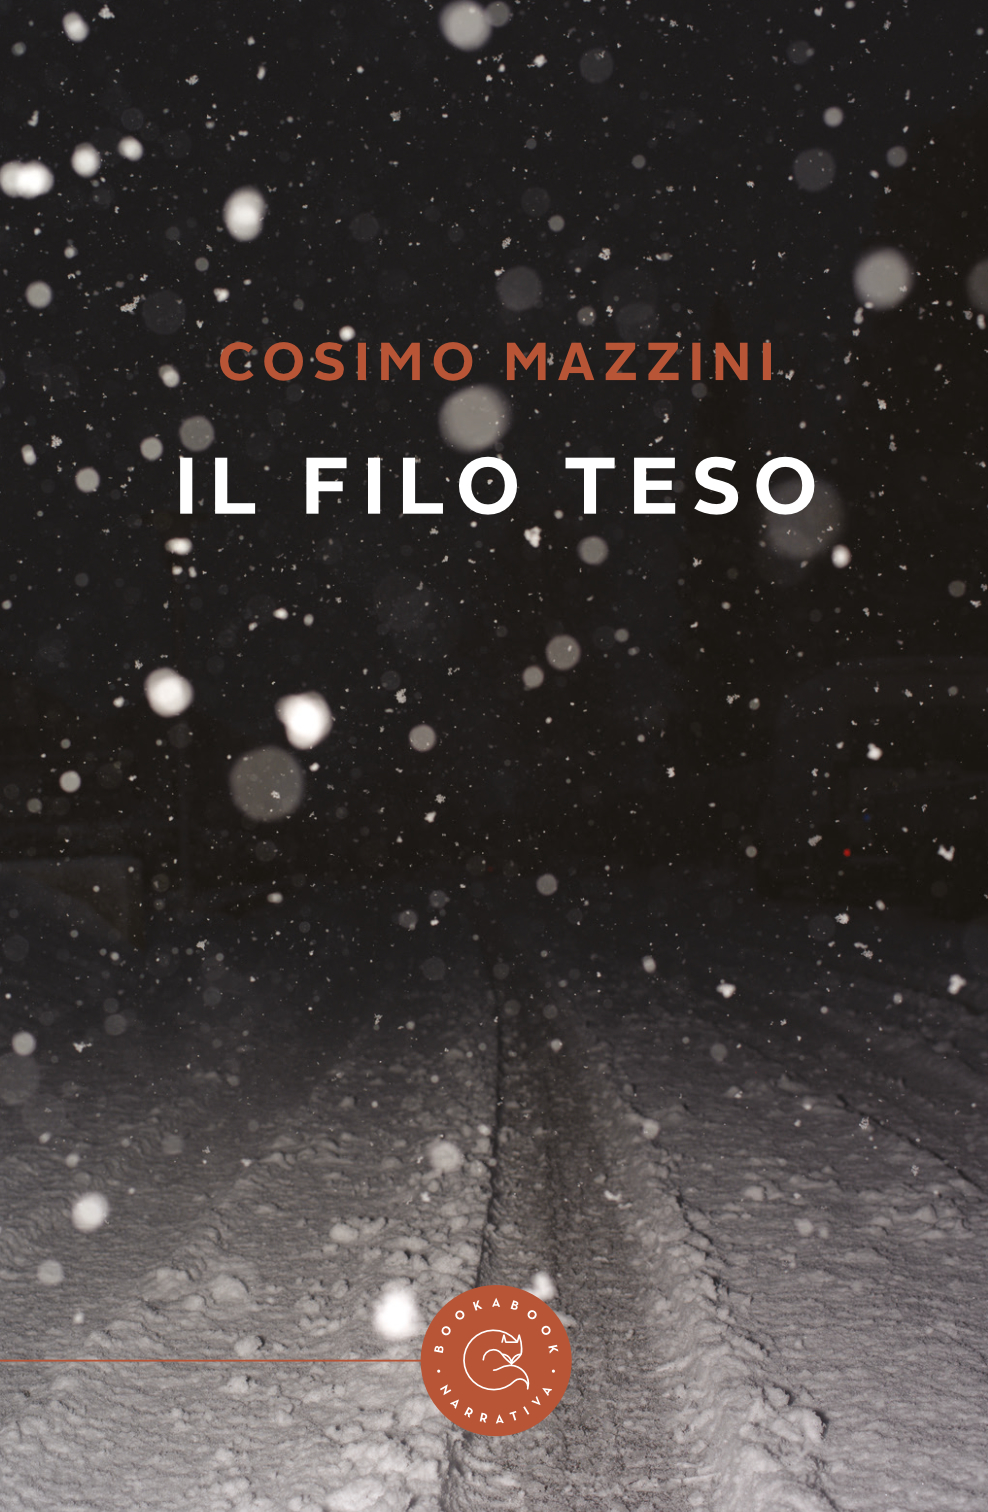 Foto 1 - Cosimo Mazzini presenta il thriller psicologico “Il filo teso”